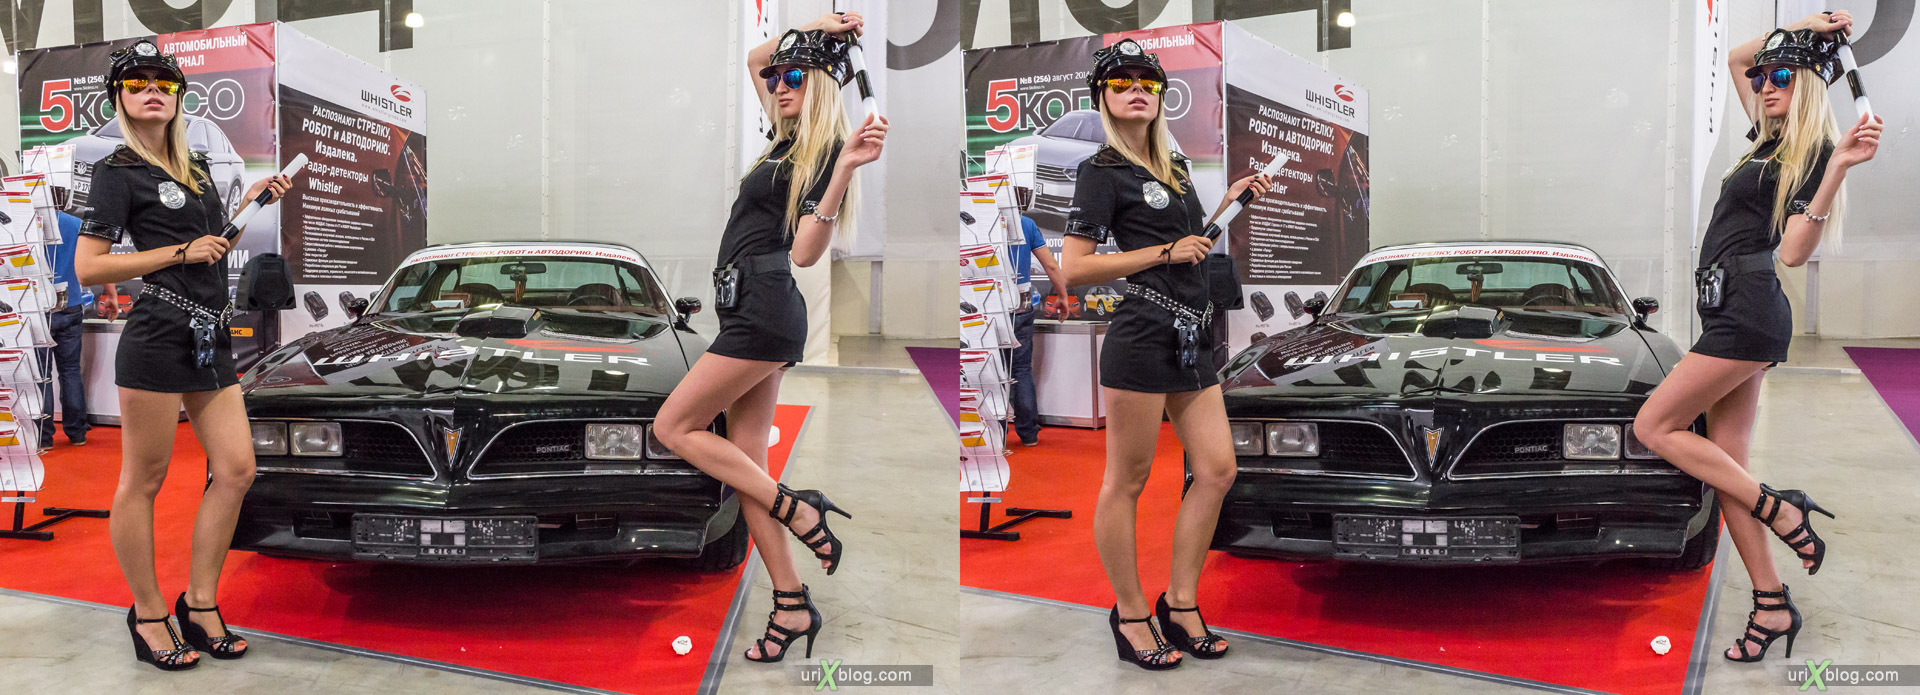 2014, девушки, модели, старый Pontiac, Московский Международный Автомобильный салон, ММАС, Москва, Россия, Крокус Экспо, 3D, перекрёстная стереопара, стерео, стереопара